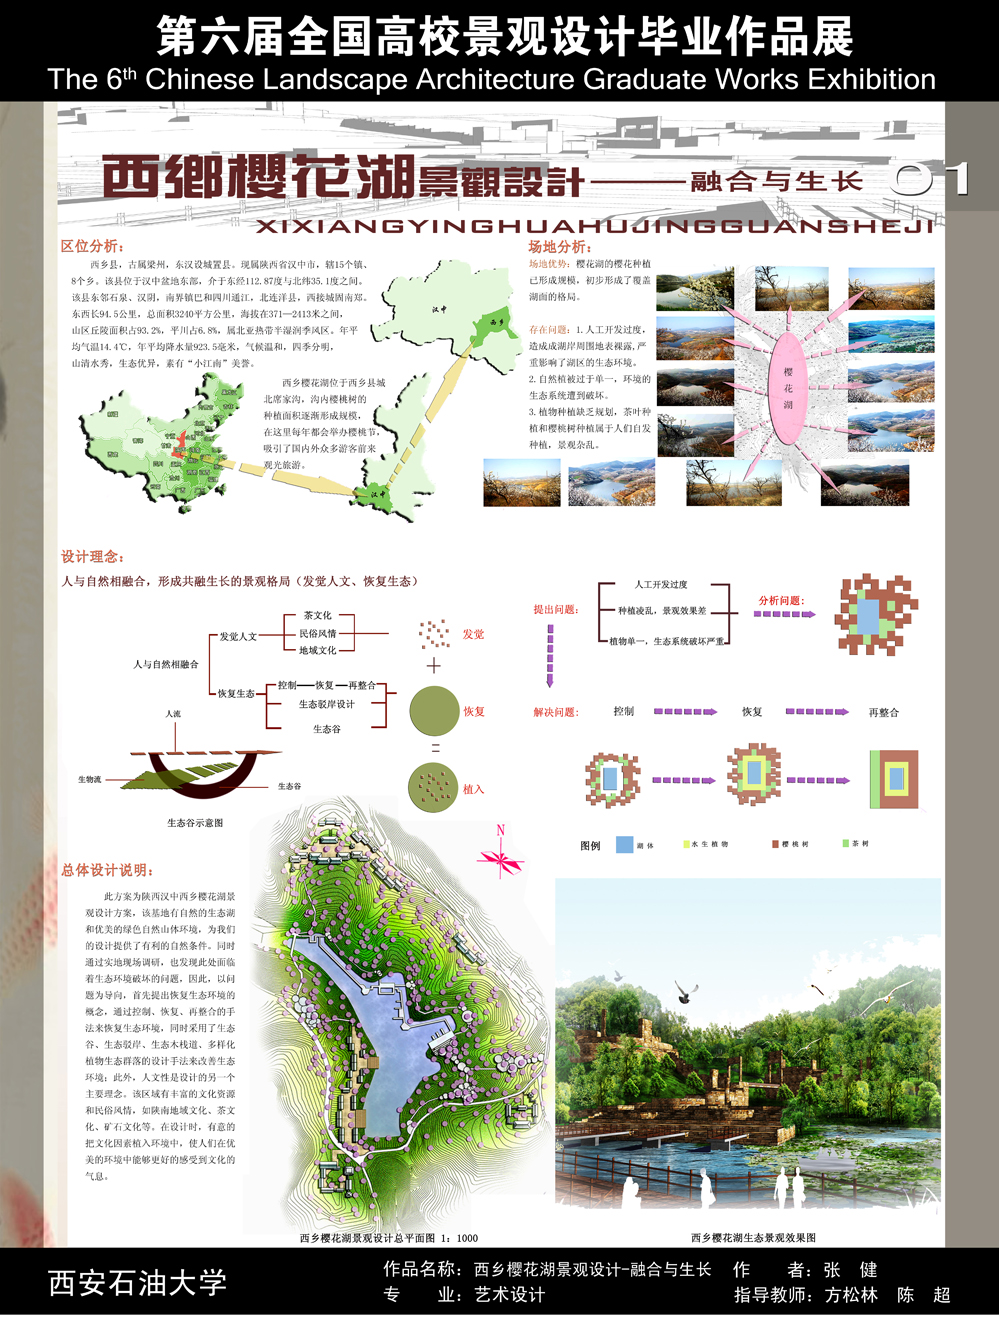 西乡樱花湖景观设计 — 融合与生长-1